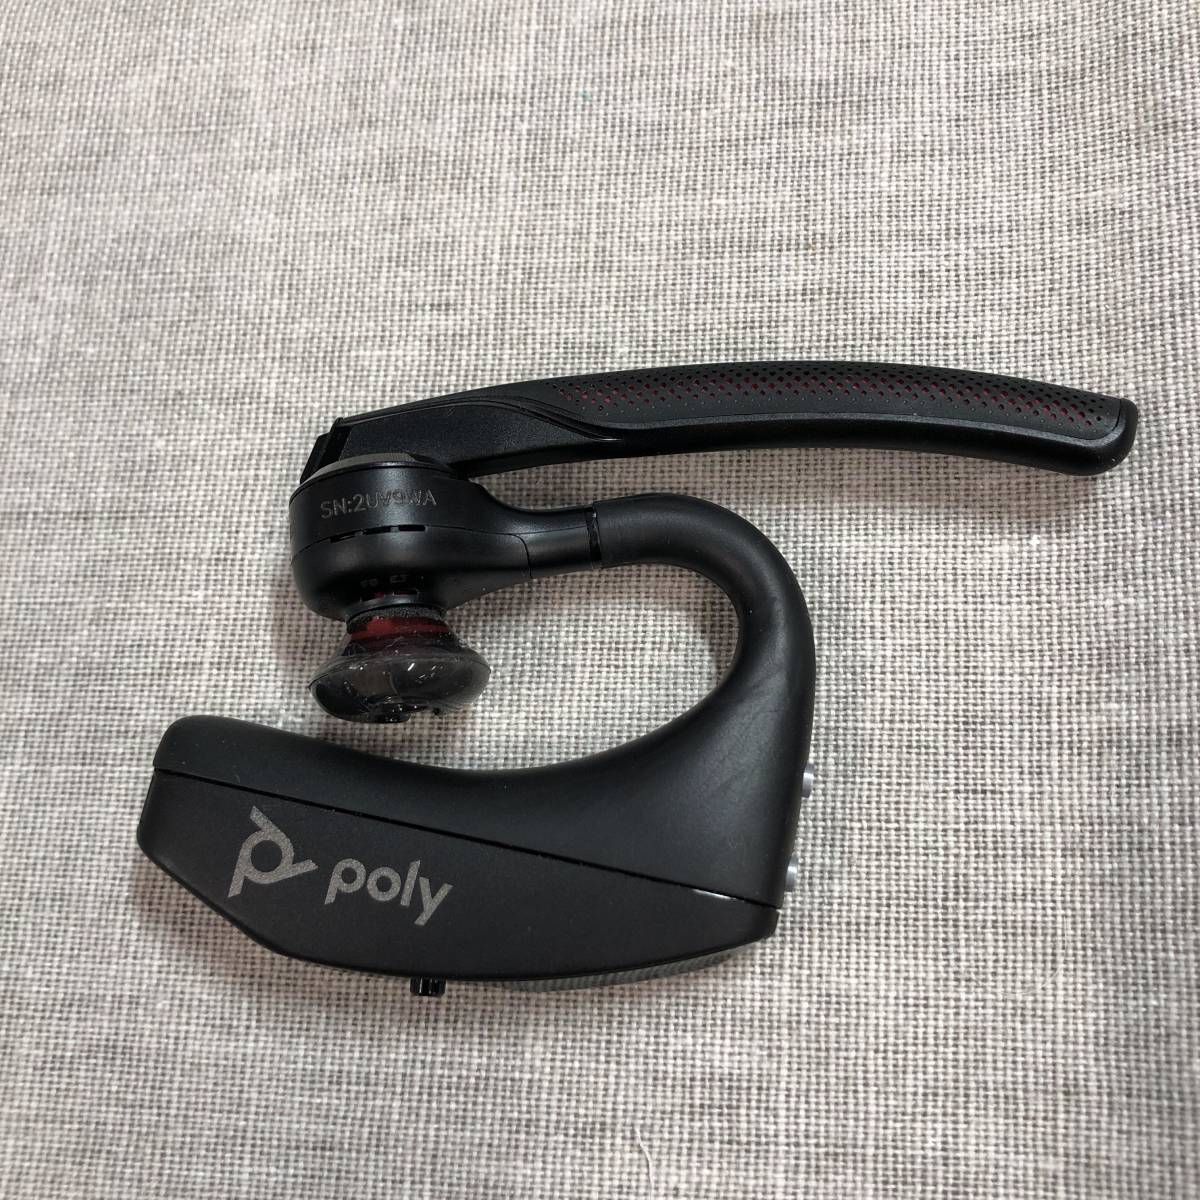 ポリー(Poly) PLANTRONICSVoyager 5200 Bluetooth ワイヤレスヘッドセット 片耳 モノラルイヤホンタイプ ノイズキャンセリングマイク_画像4